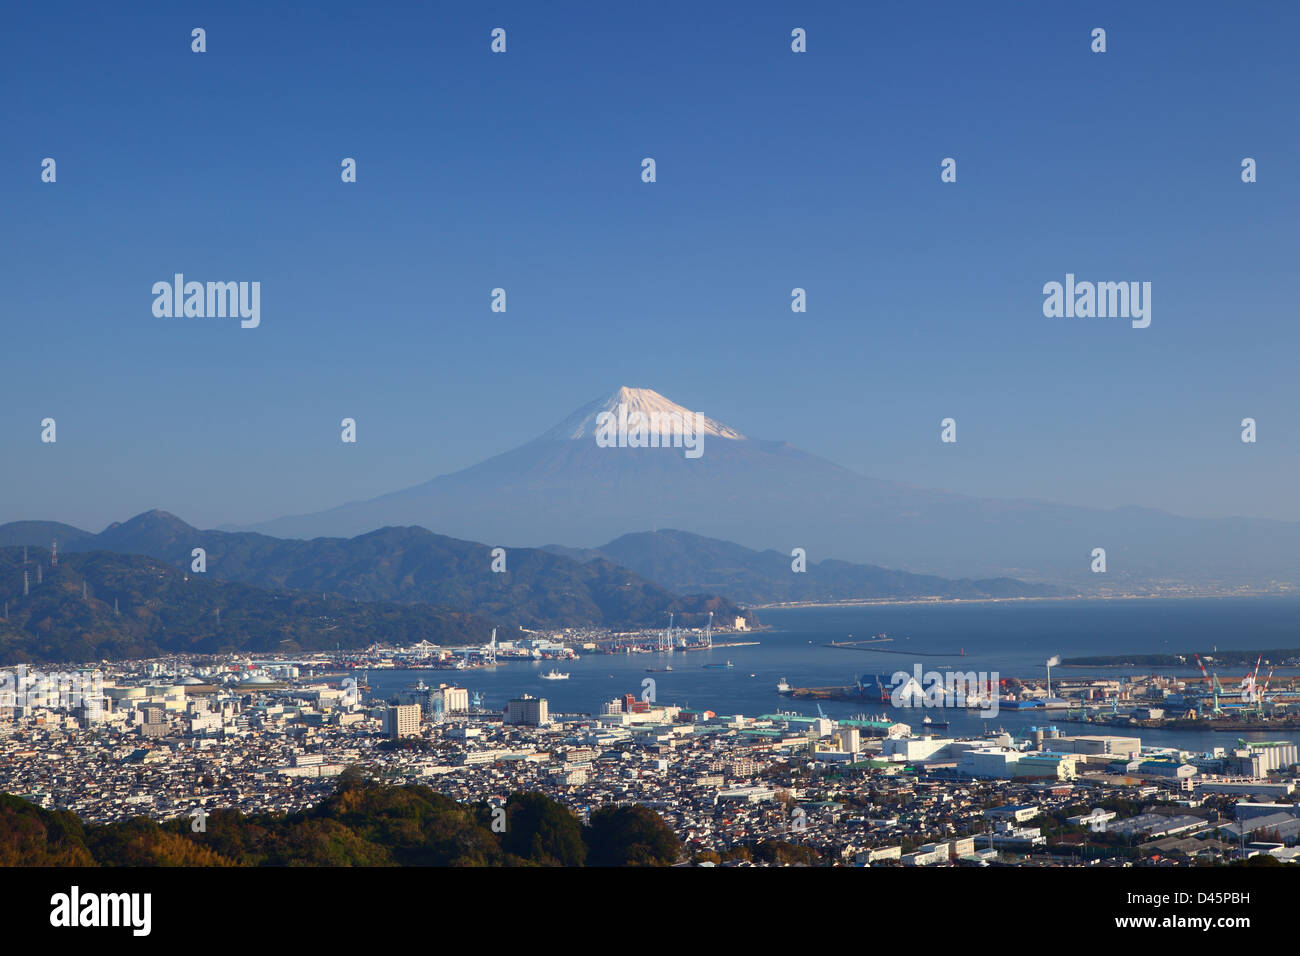 Mt. Fuji and Shimizu Port, Shizuoka, Japan Stock Photo